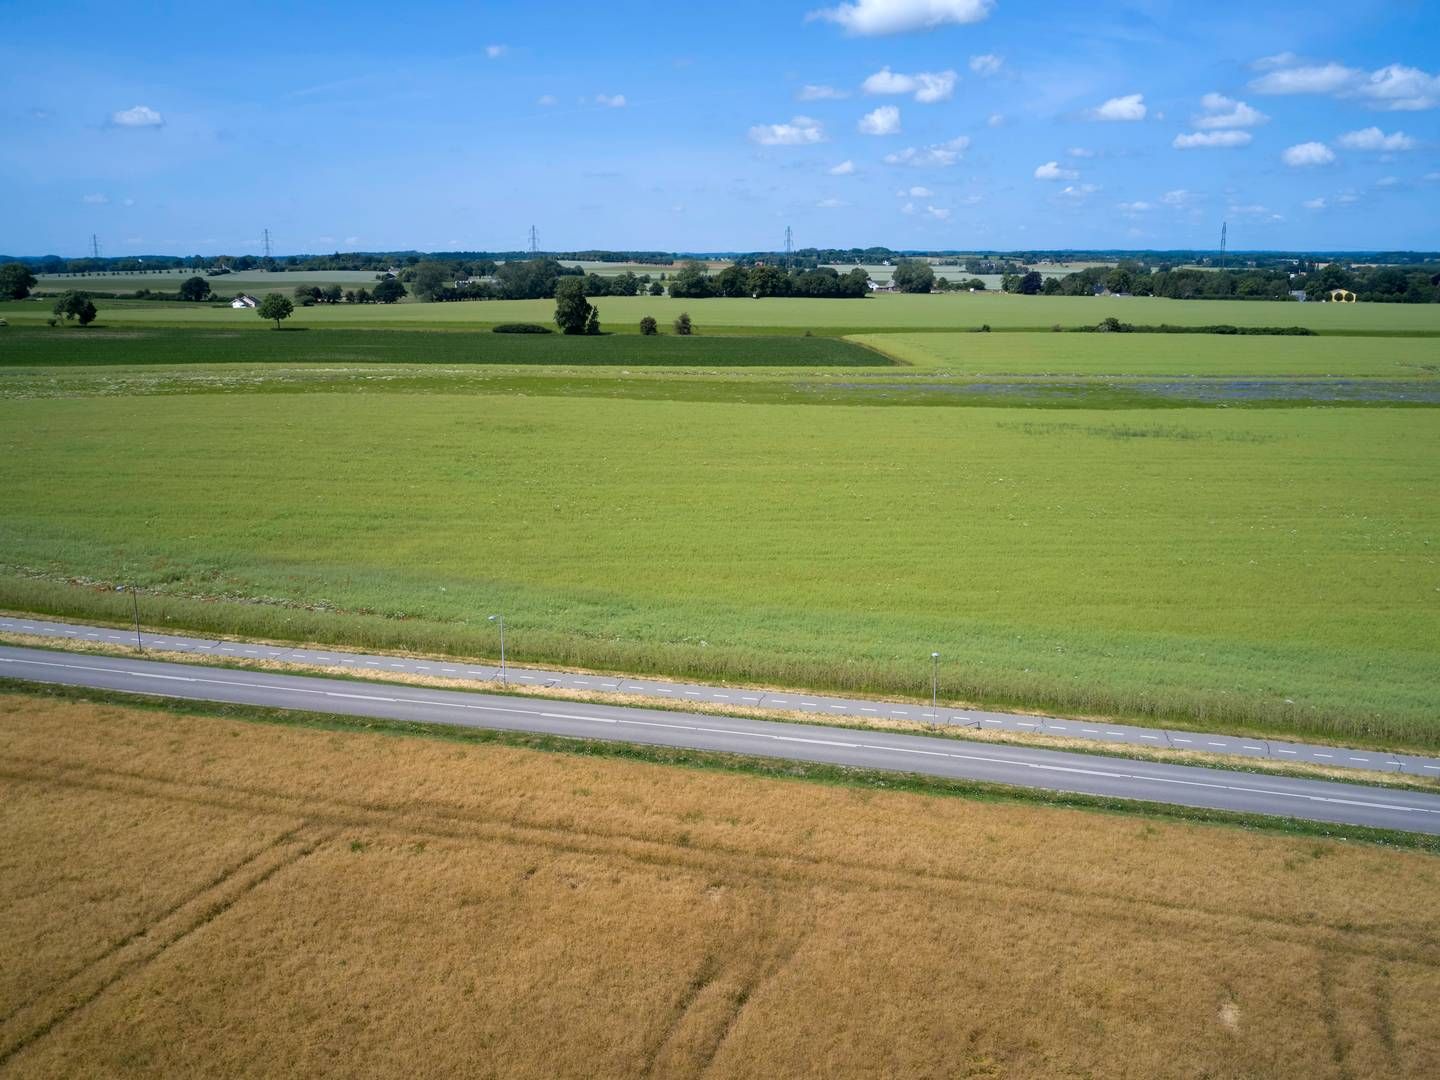 Landbrugsarealerne skal reduceres, mener Klimarådet. | Foto: Jens Dresling